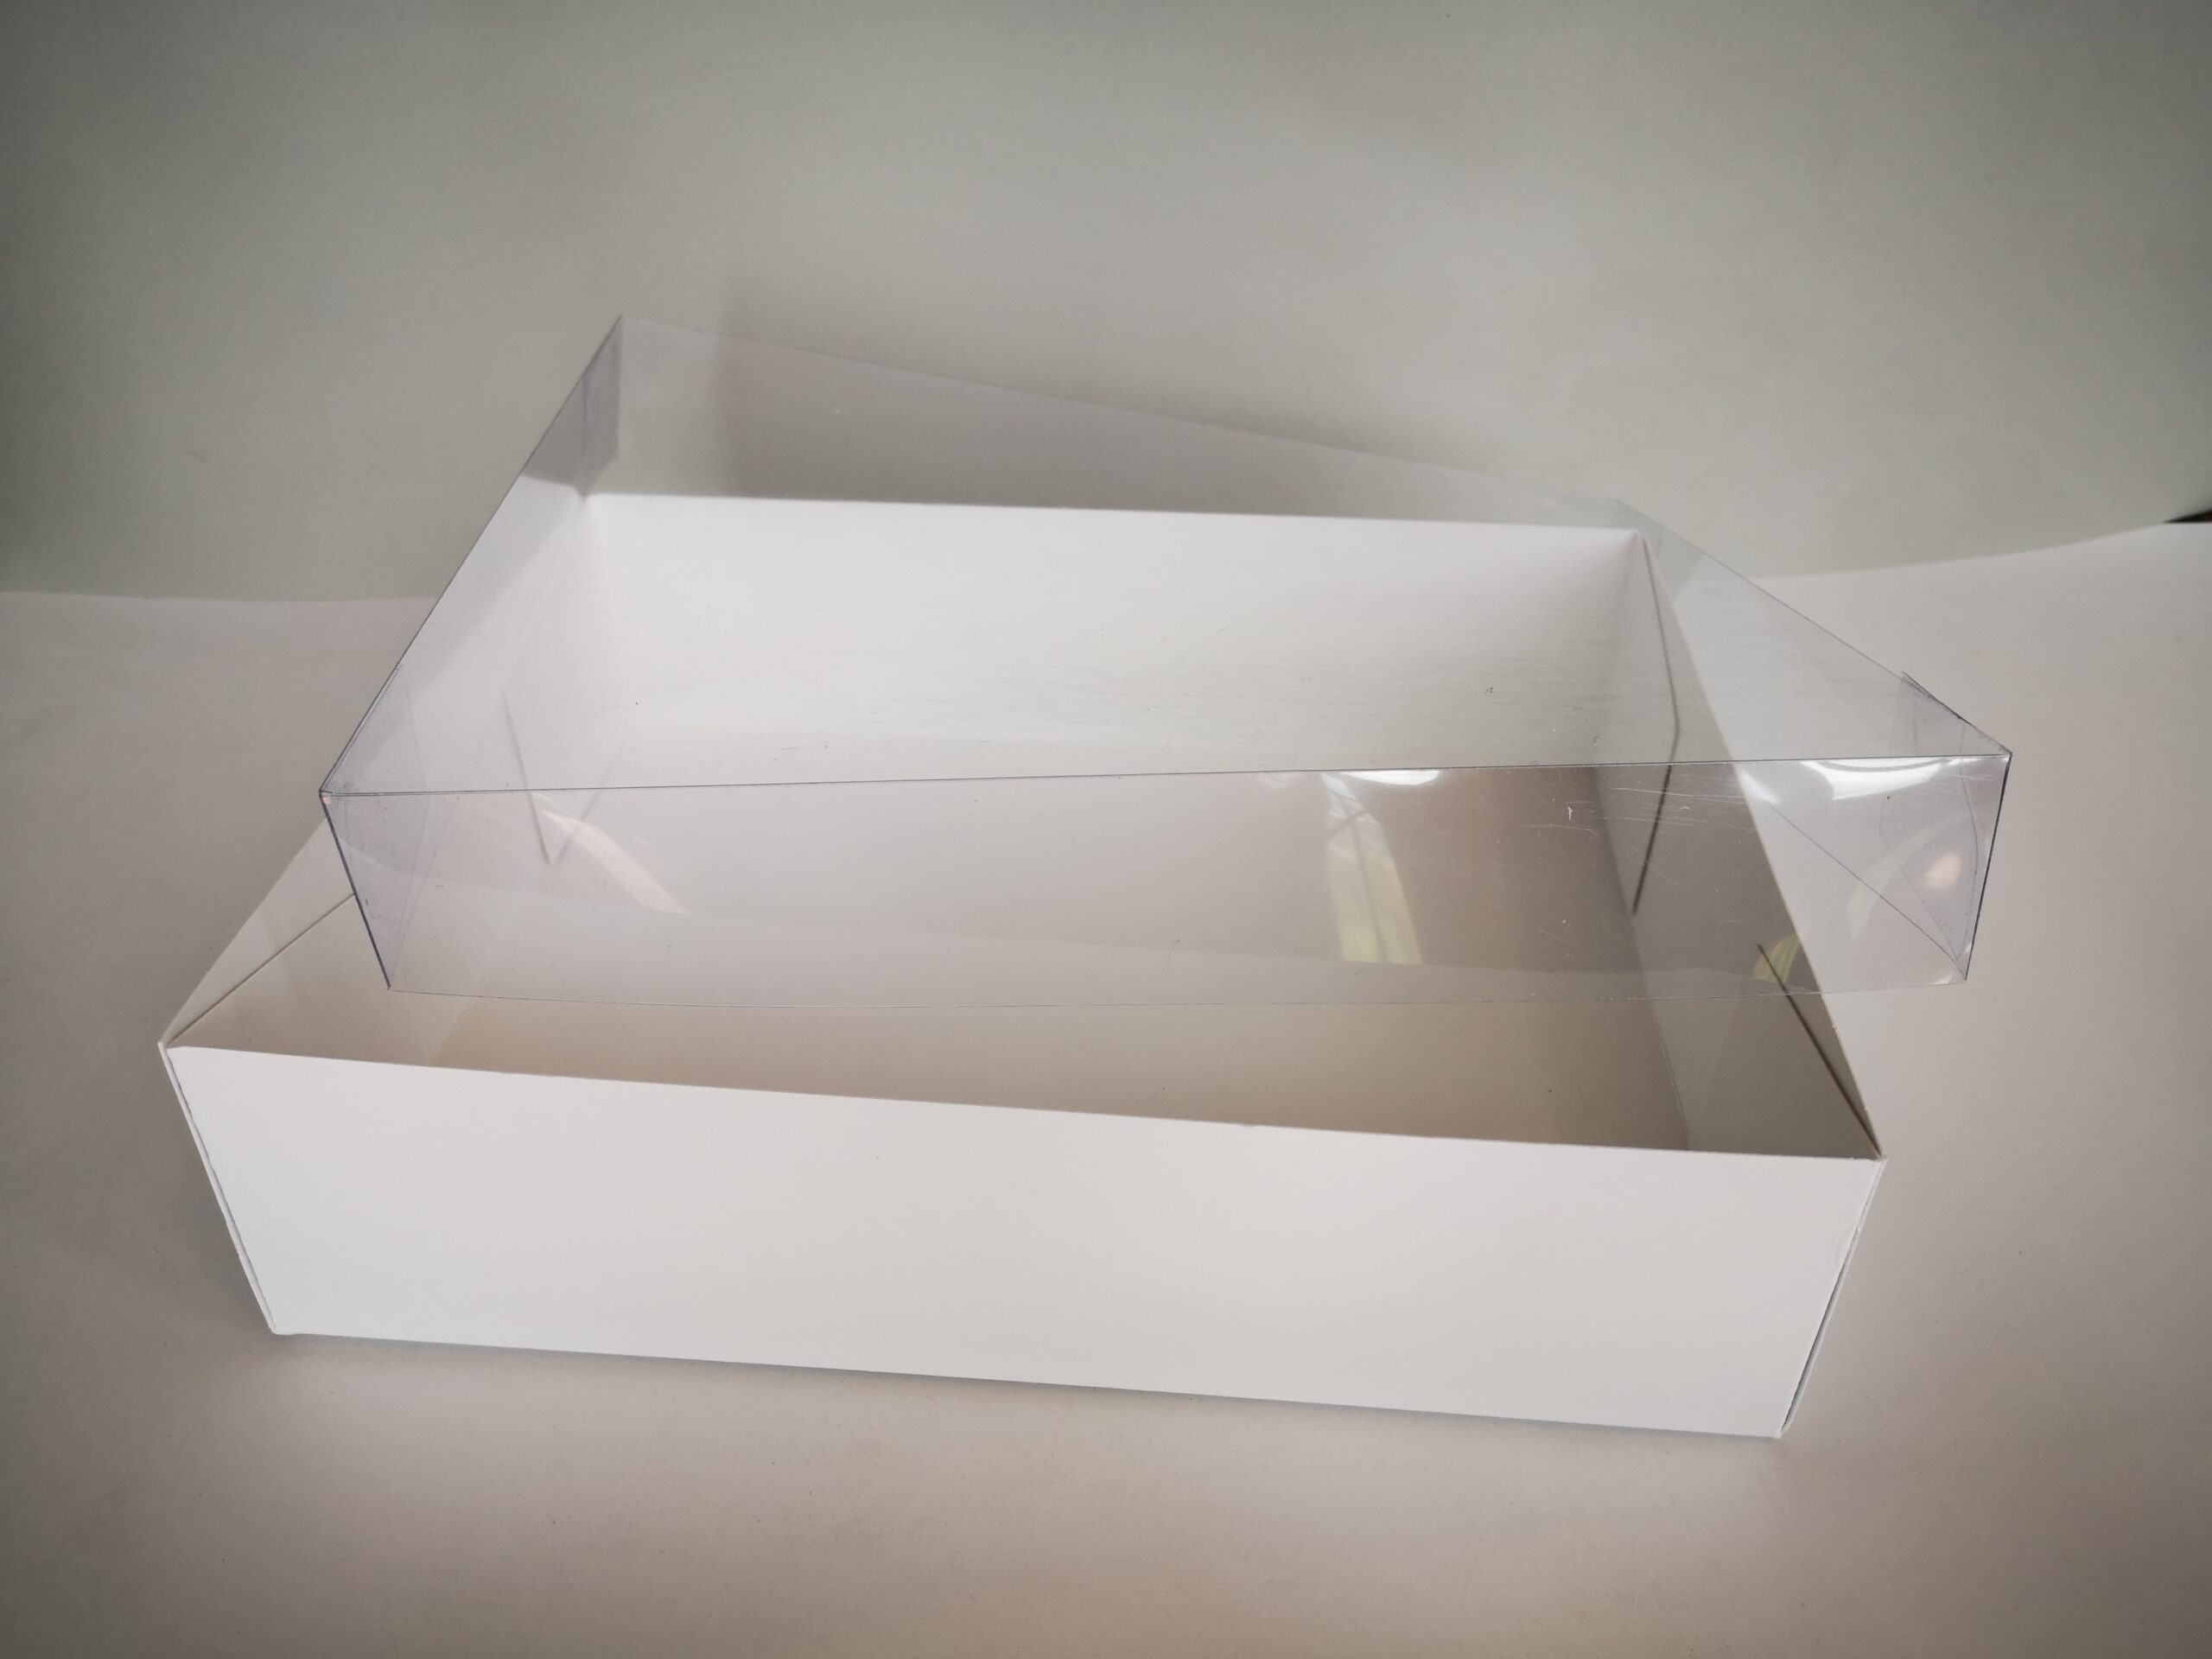 Caja carton blanco tapa transparente (30x20cms)